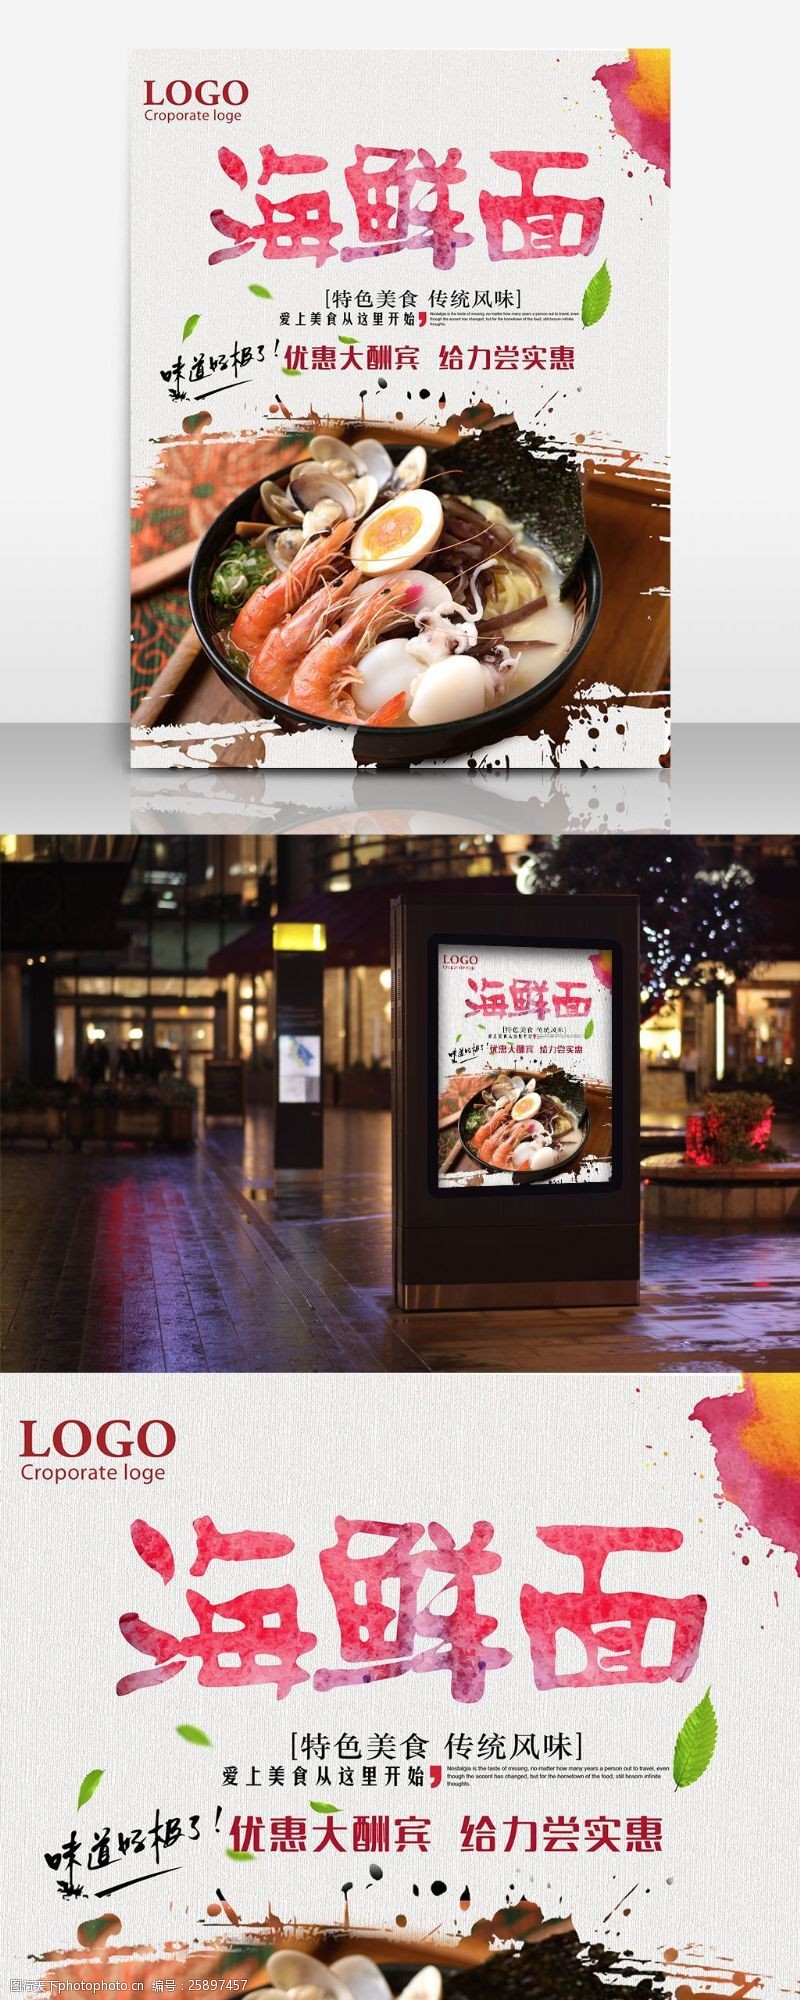 韩国风味海鲜面餐饮美食宣传